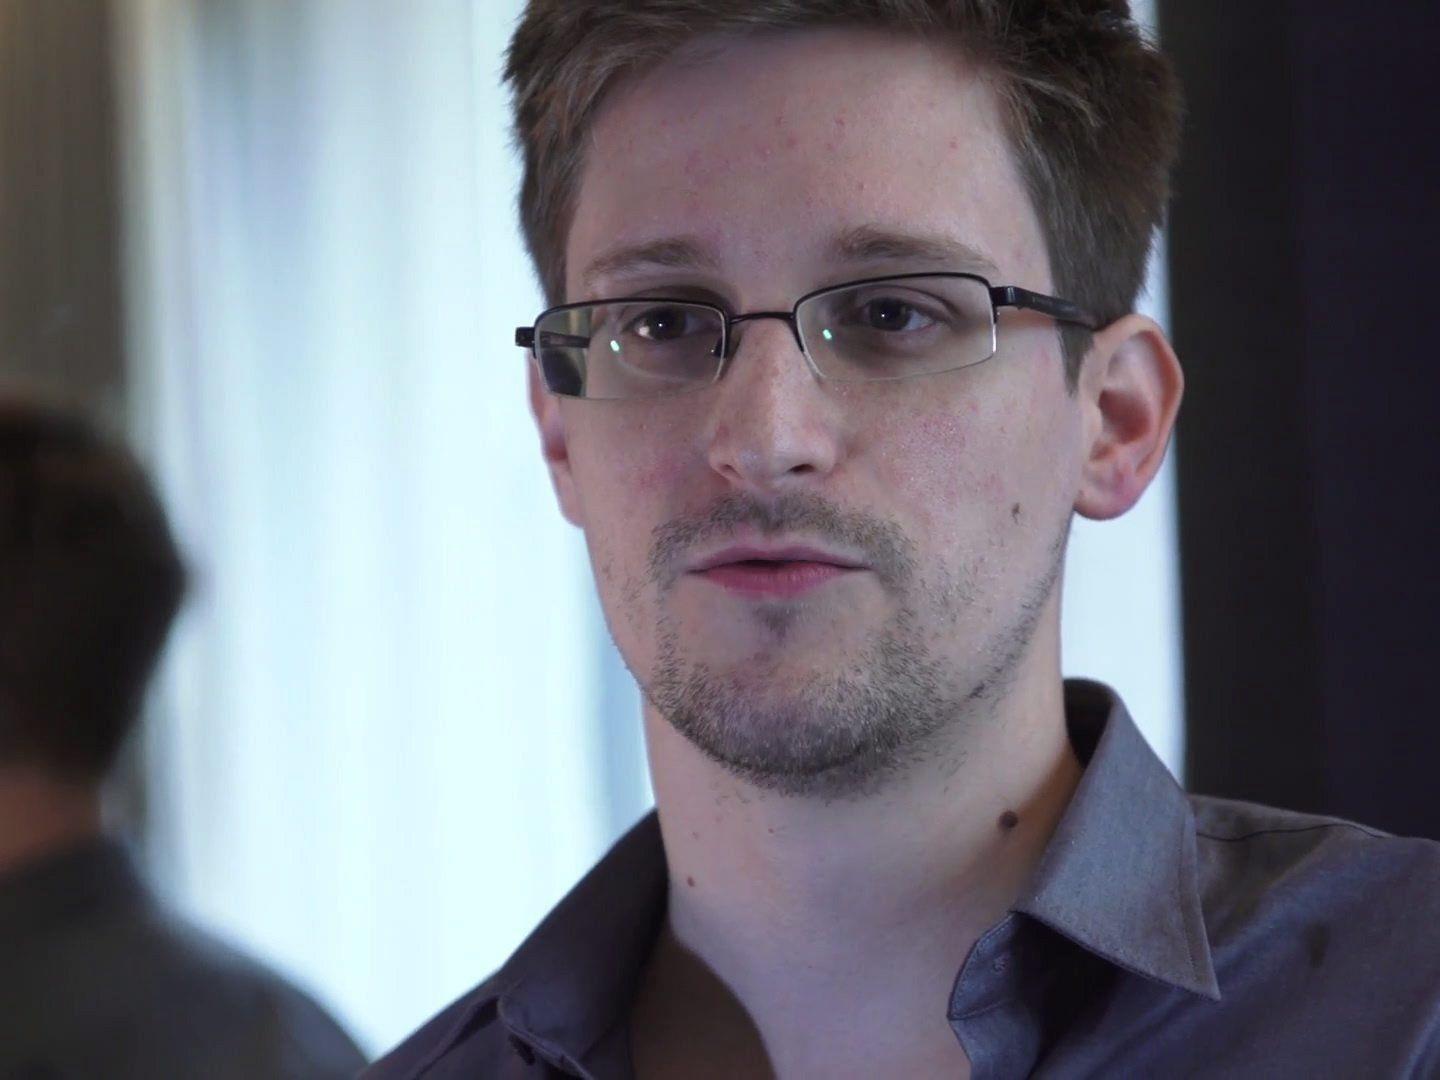 Edward Snowden: Zugang zu streng geheimen Systemen immer breiter.